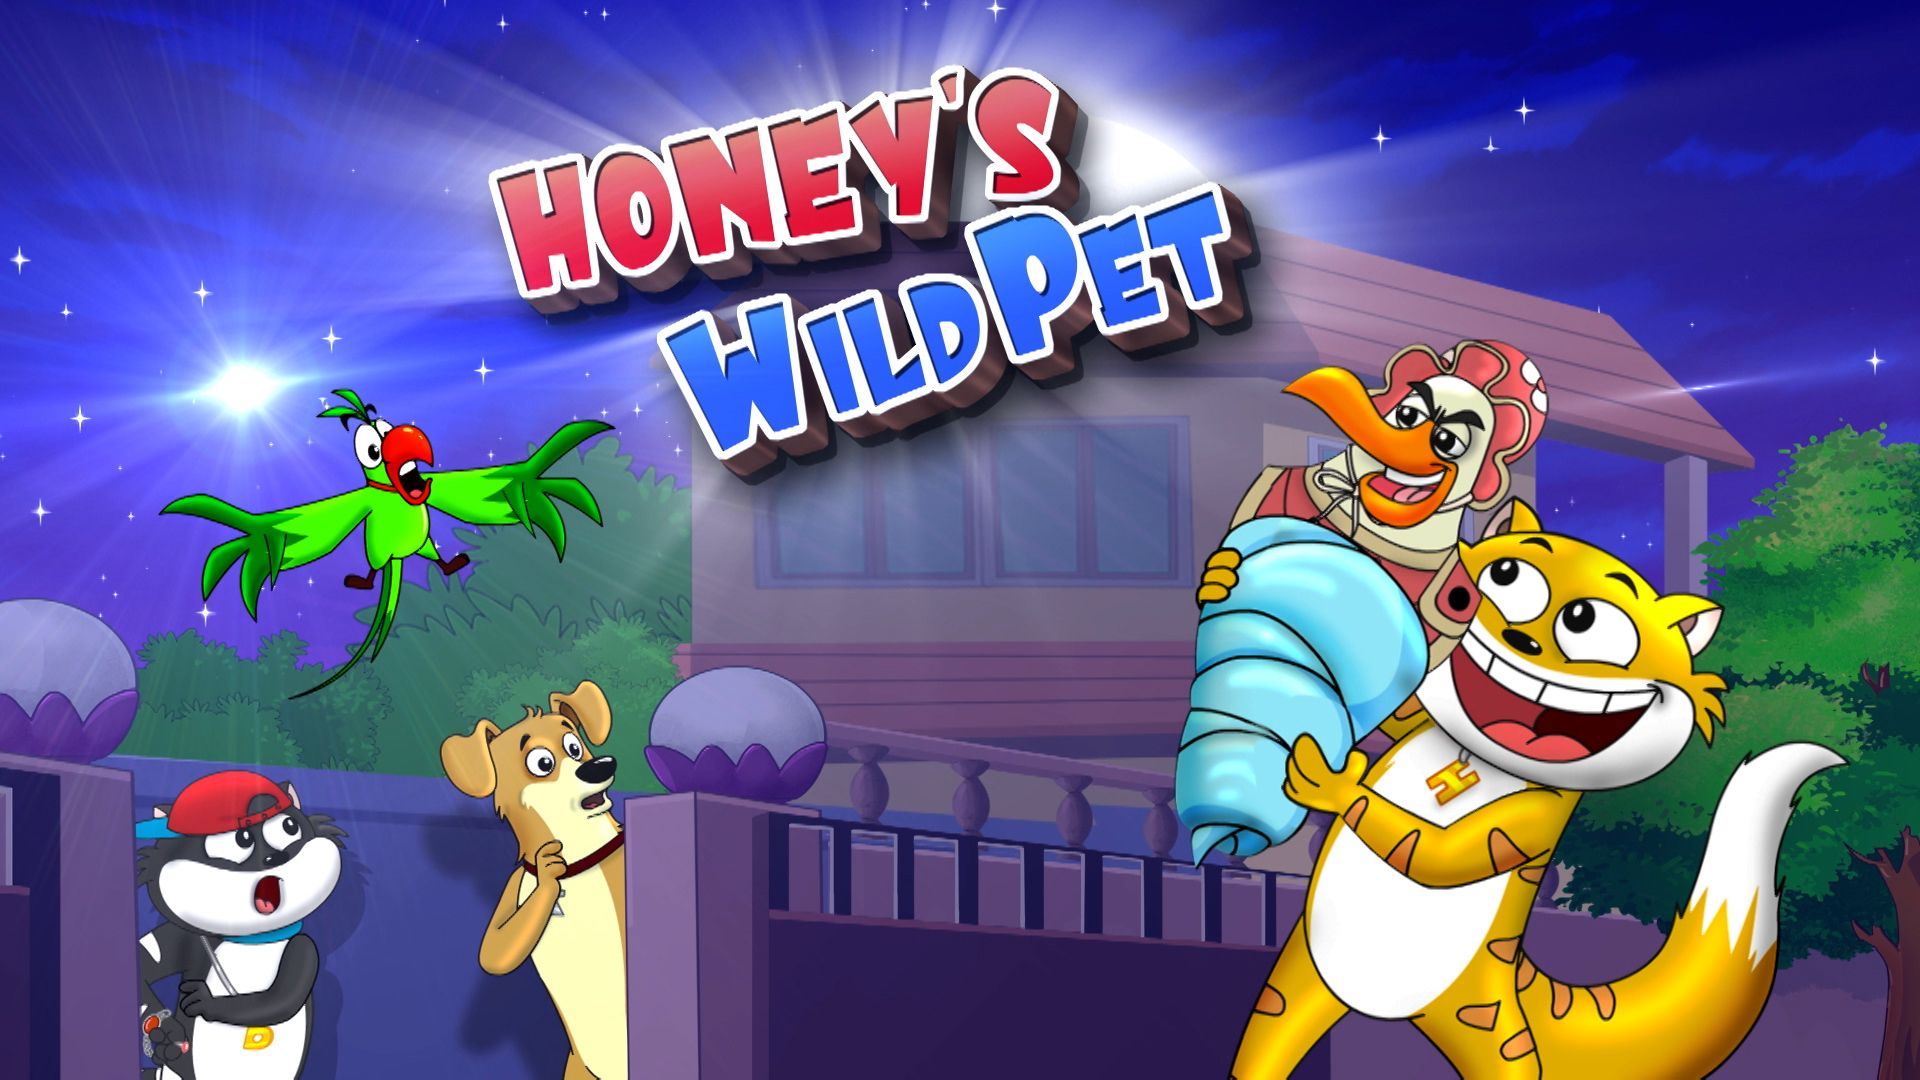 Honey's Wild Pet